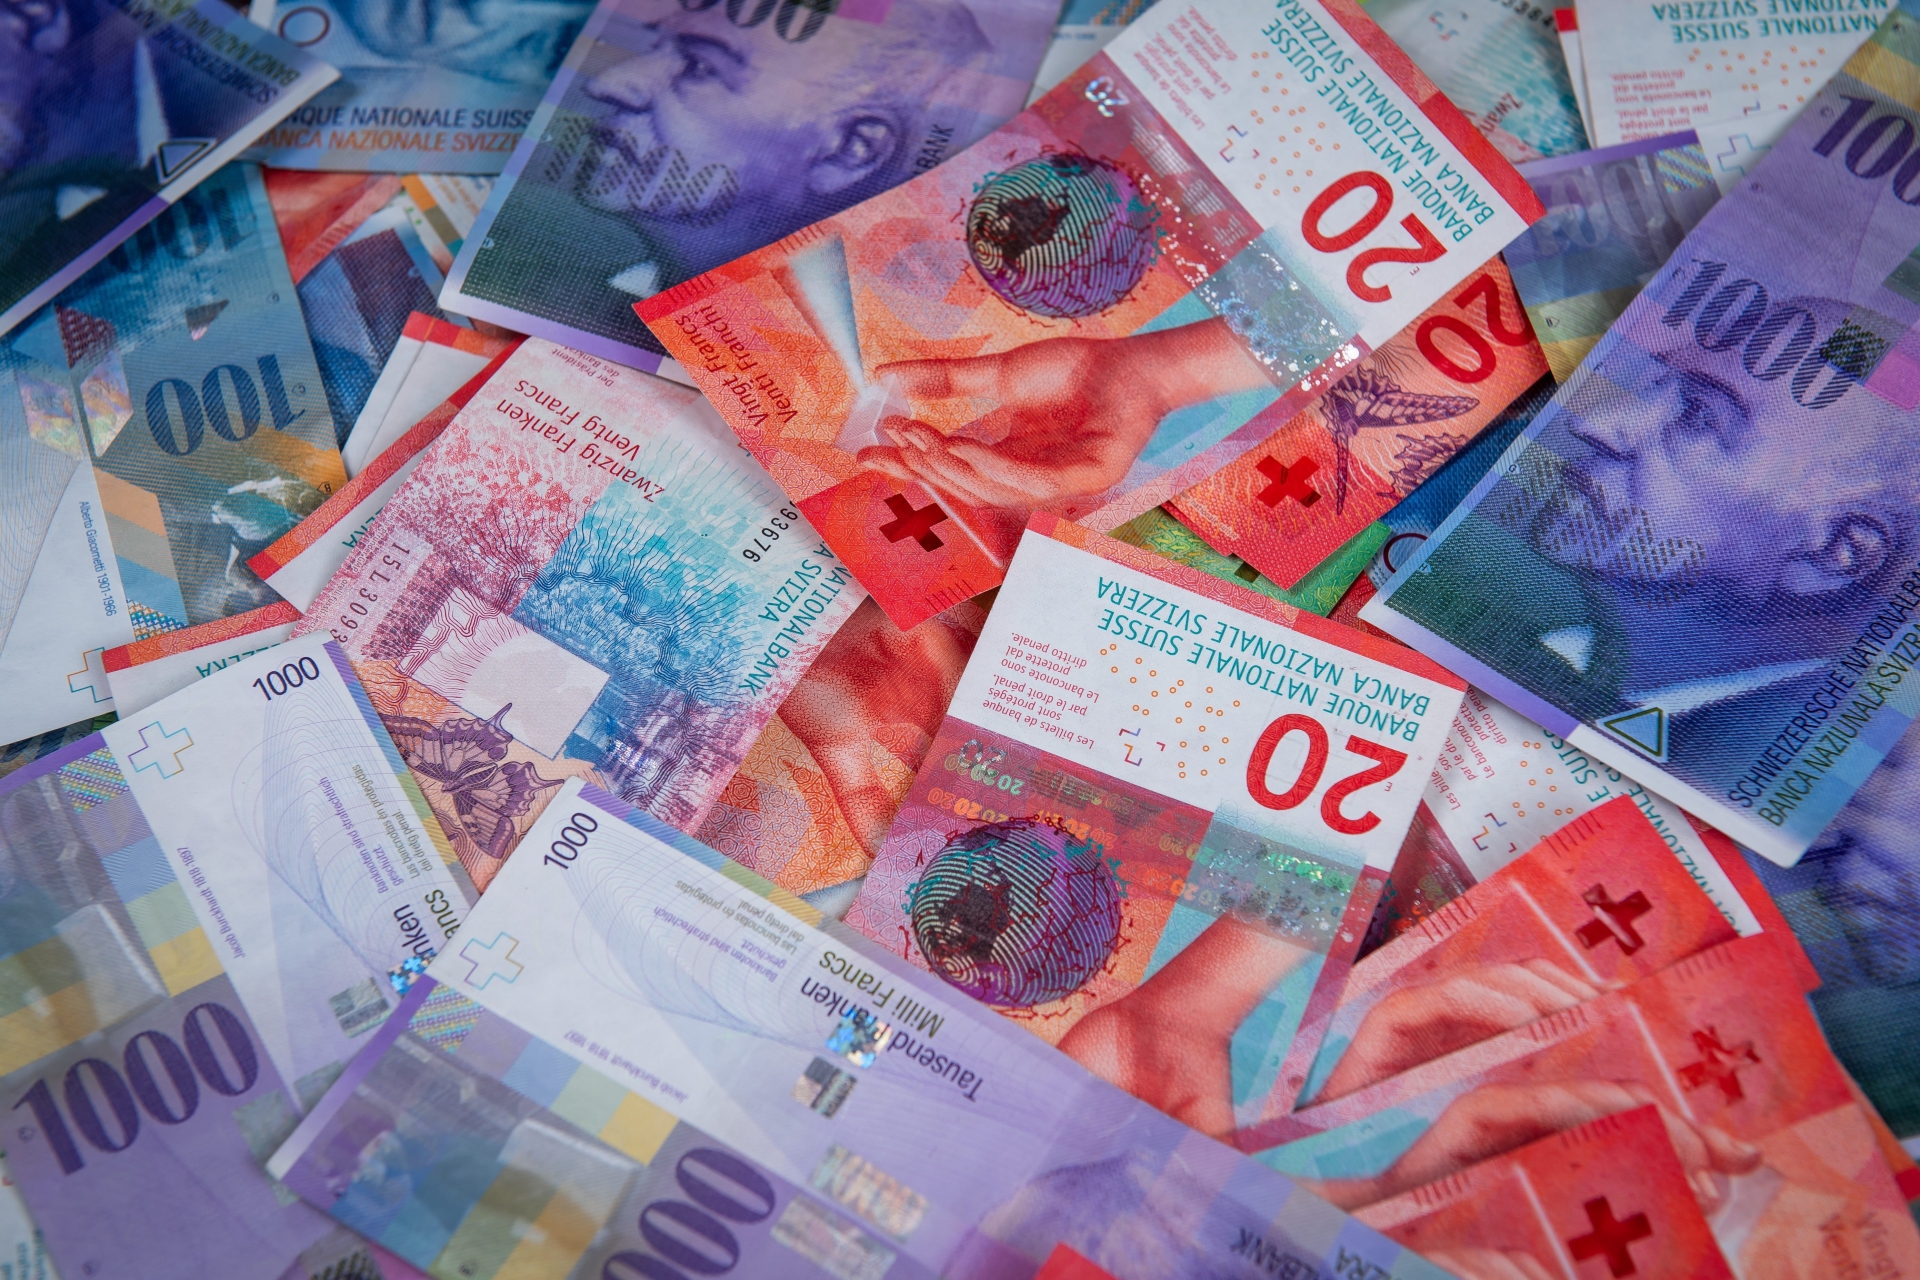 Le premier salaire minimum cantonal de Suisse est en vigueur à Neuchâtel depuis le 4 août 2017.